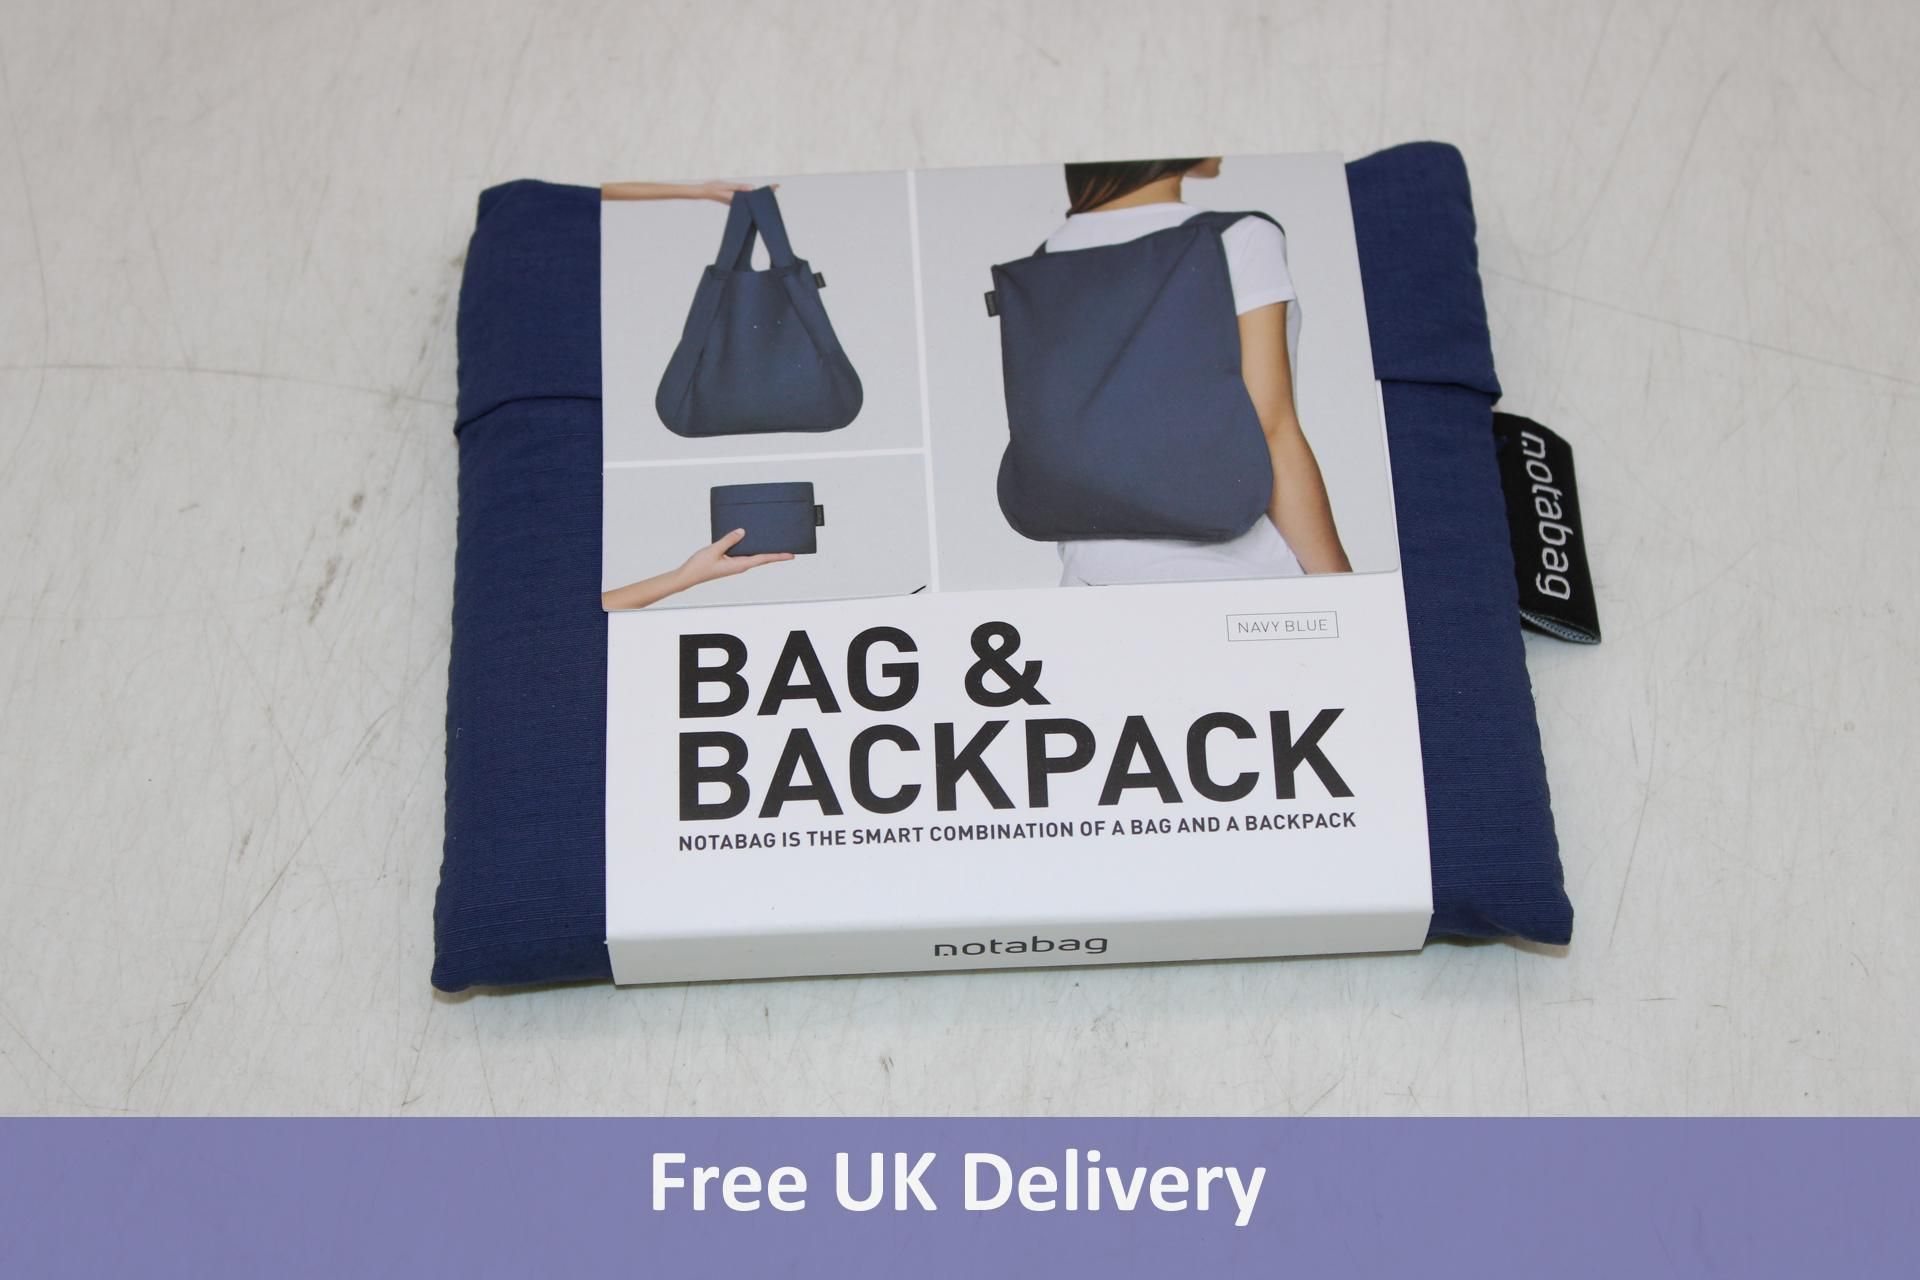 Five Notabag Bag & Backpack, Navy Blue